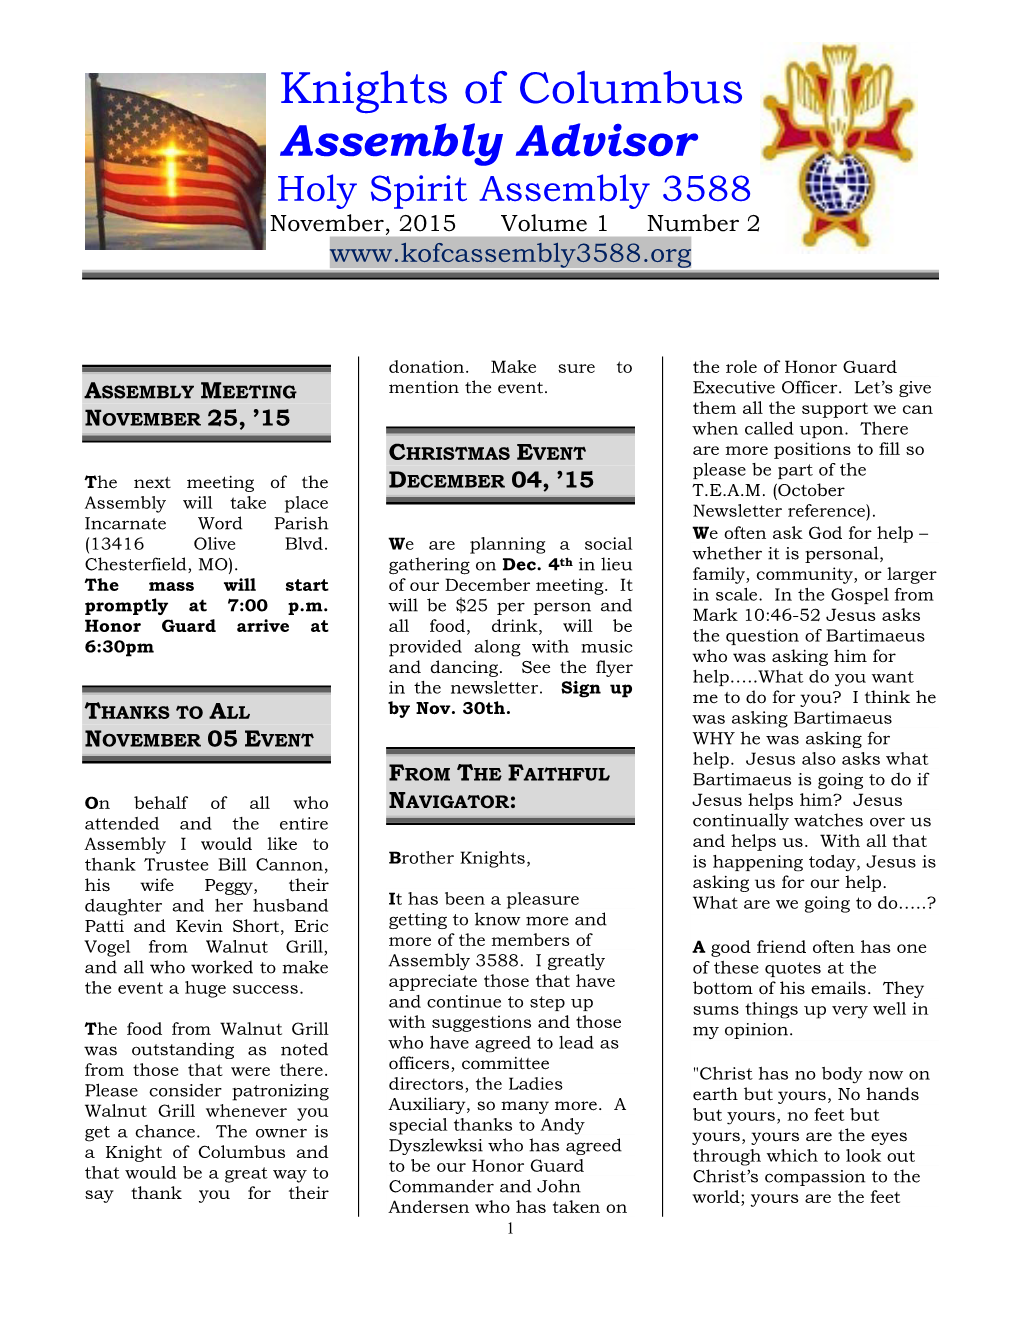 Assembly Advisor Holy Spirit Assembly 3588 November, 2015 Volume 1 Number 2